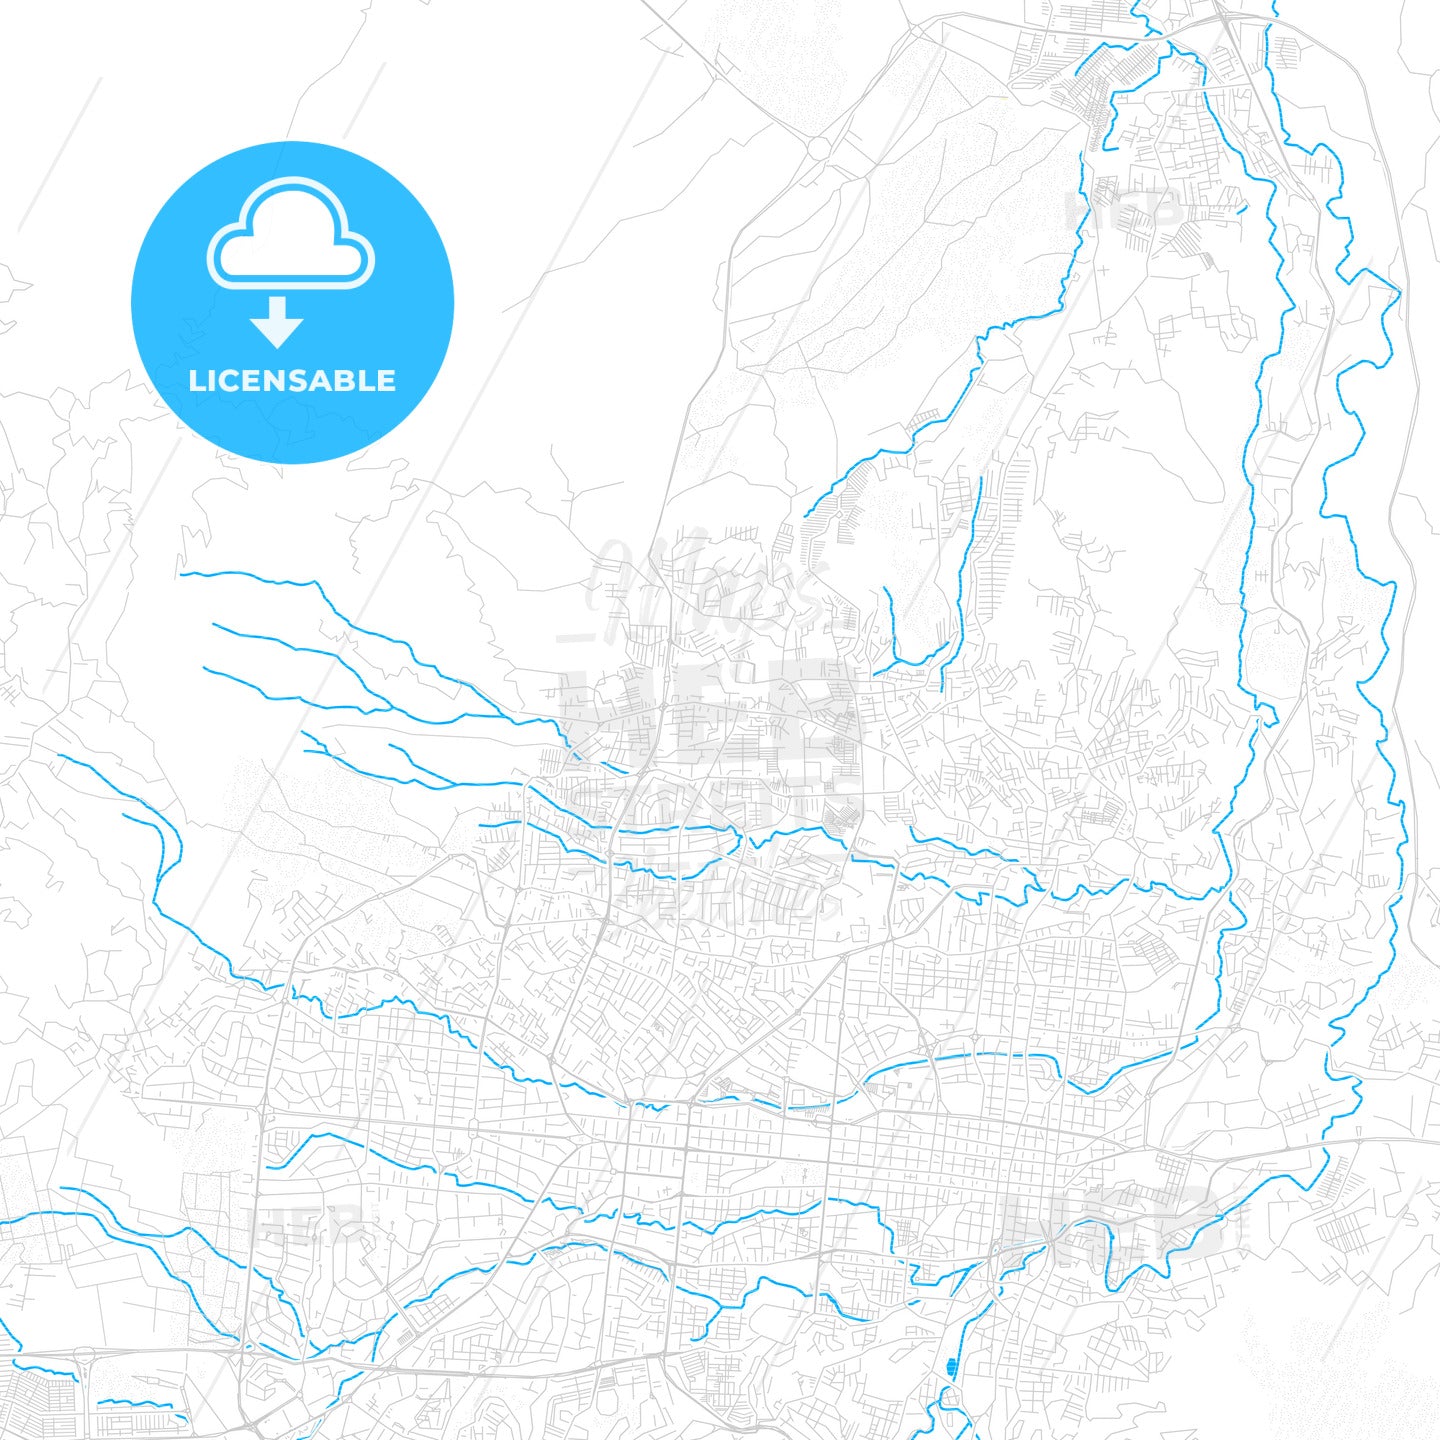 Mejicanos, El Salvador PDF vector map with water in focus